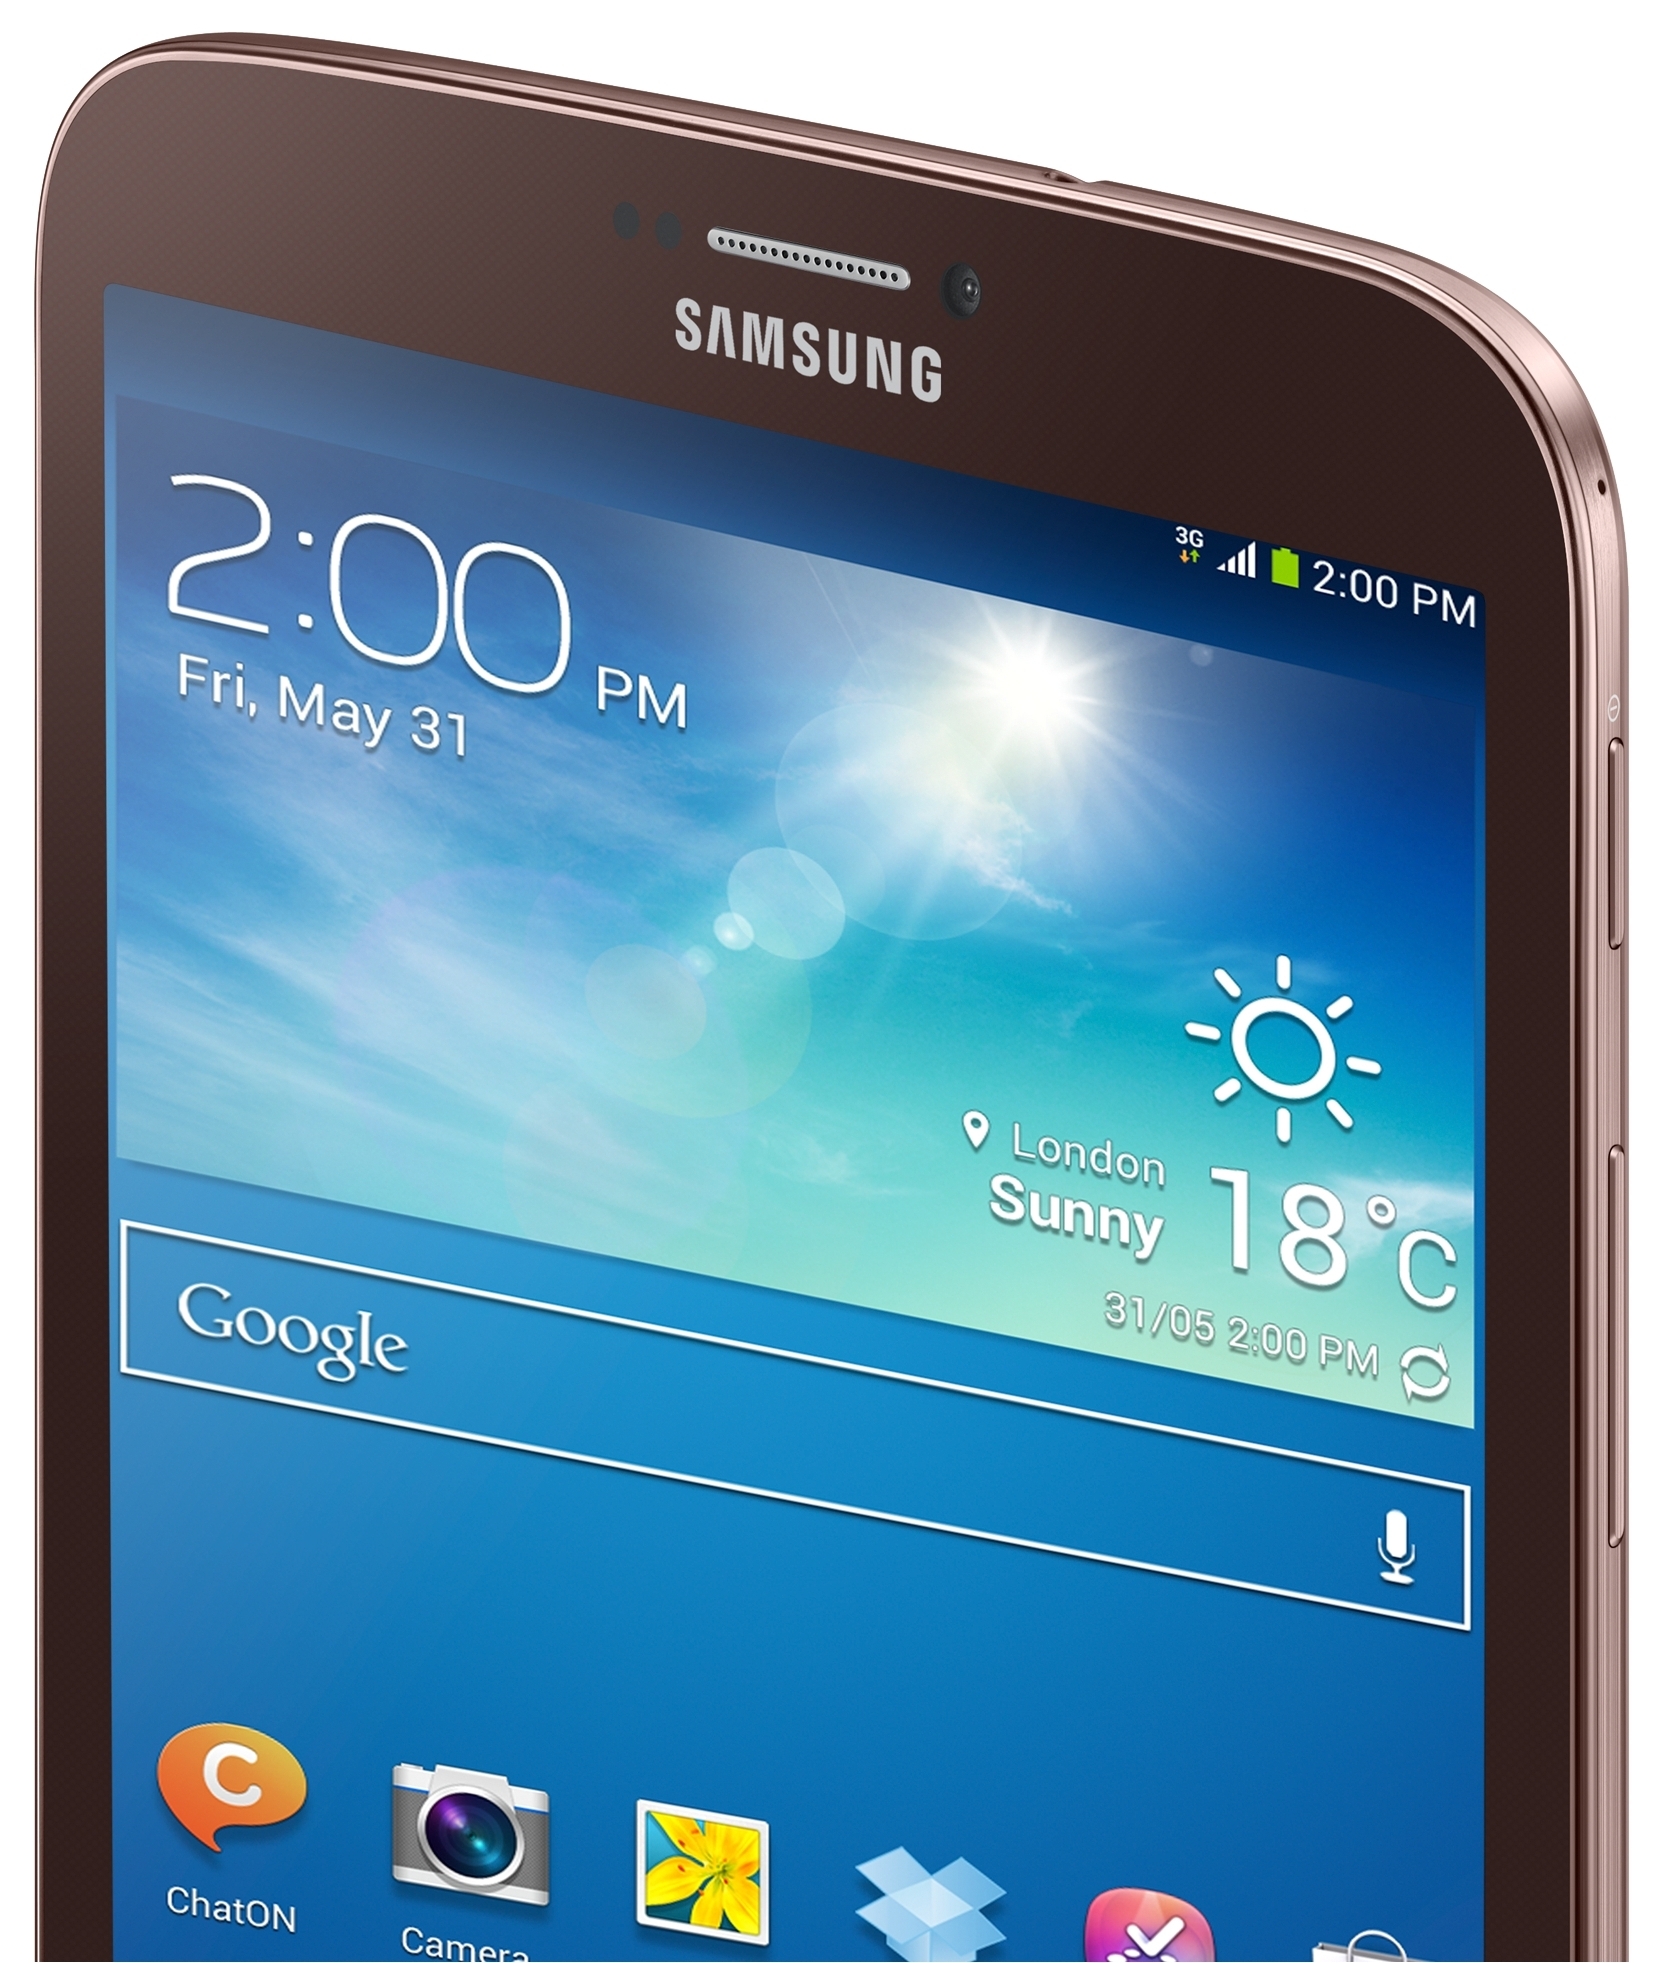 Galaxy 3 8.0. Samsung Galaxy Tab SM t310. Samsung Galaxy Tab 3 8.0. Планшет самсунг галакси таб 3. Samsung Galaxy Tab 3 8.0 SM-t311.